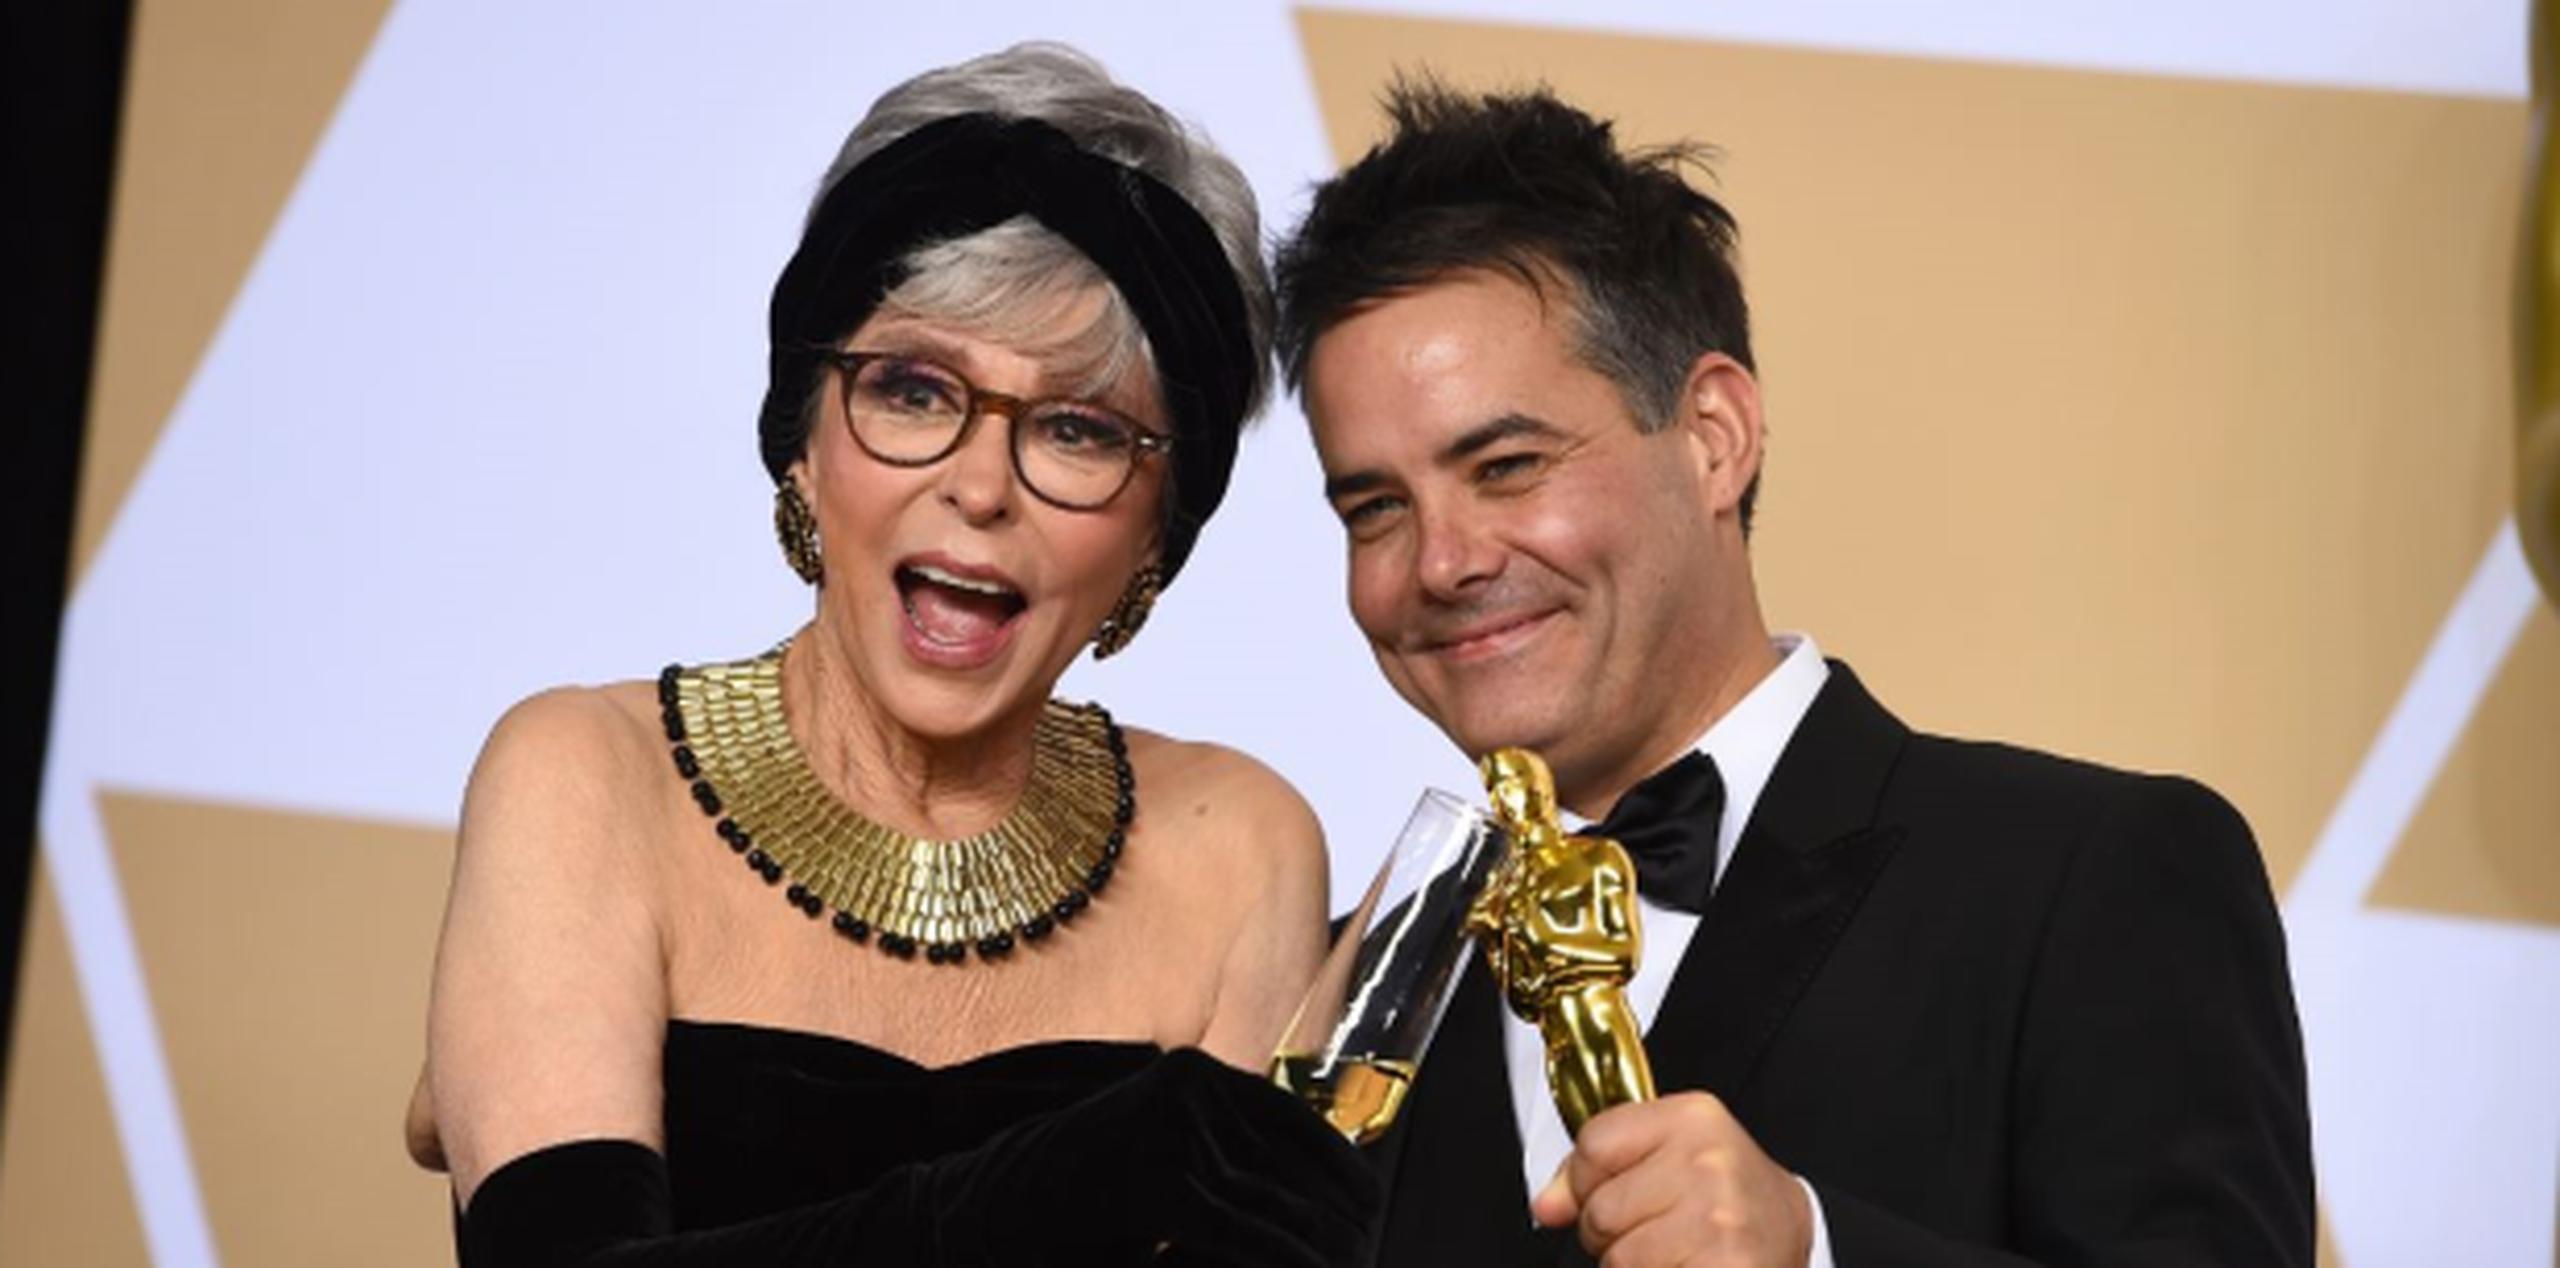 La actriz boricua Rita Moreno junto al director chileno Sebastián Lelio, ganador del Oscar a la mejor cinta en lengua extranjera por "Una mujer fantástica". (AP)